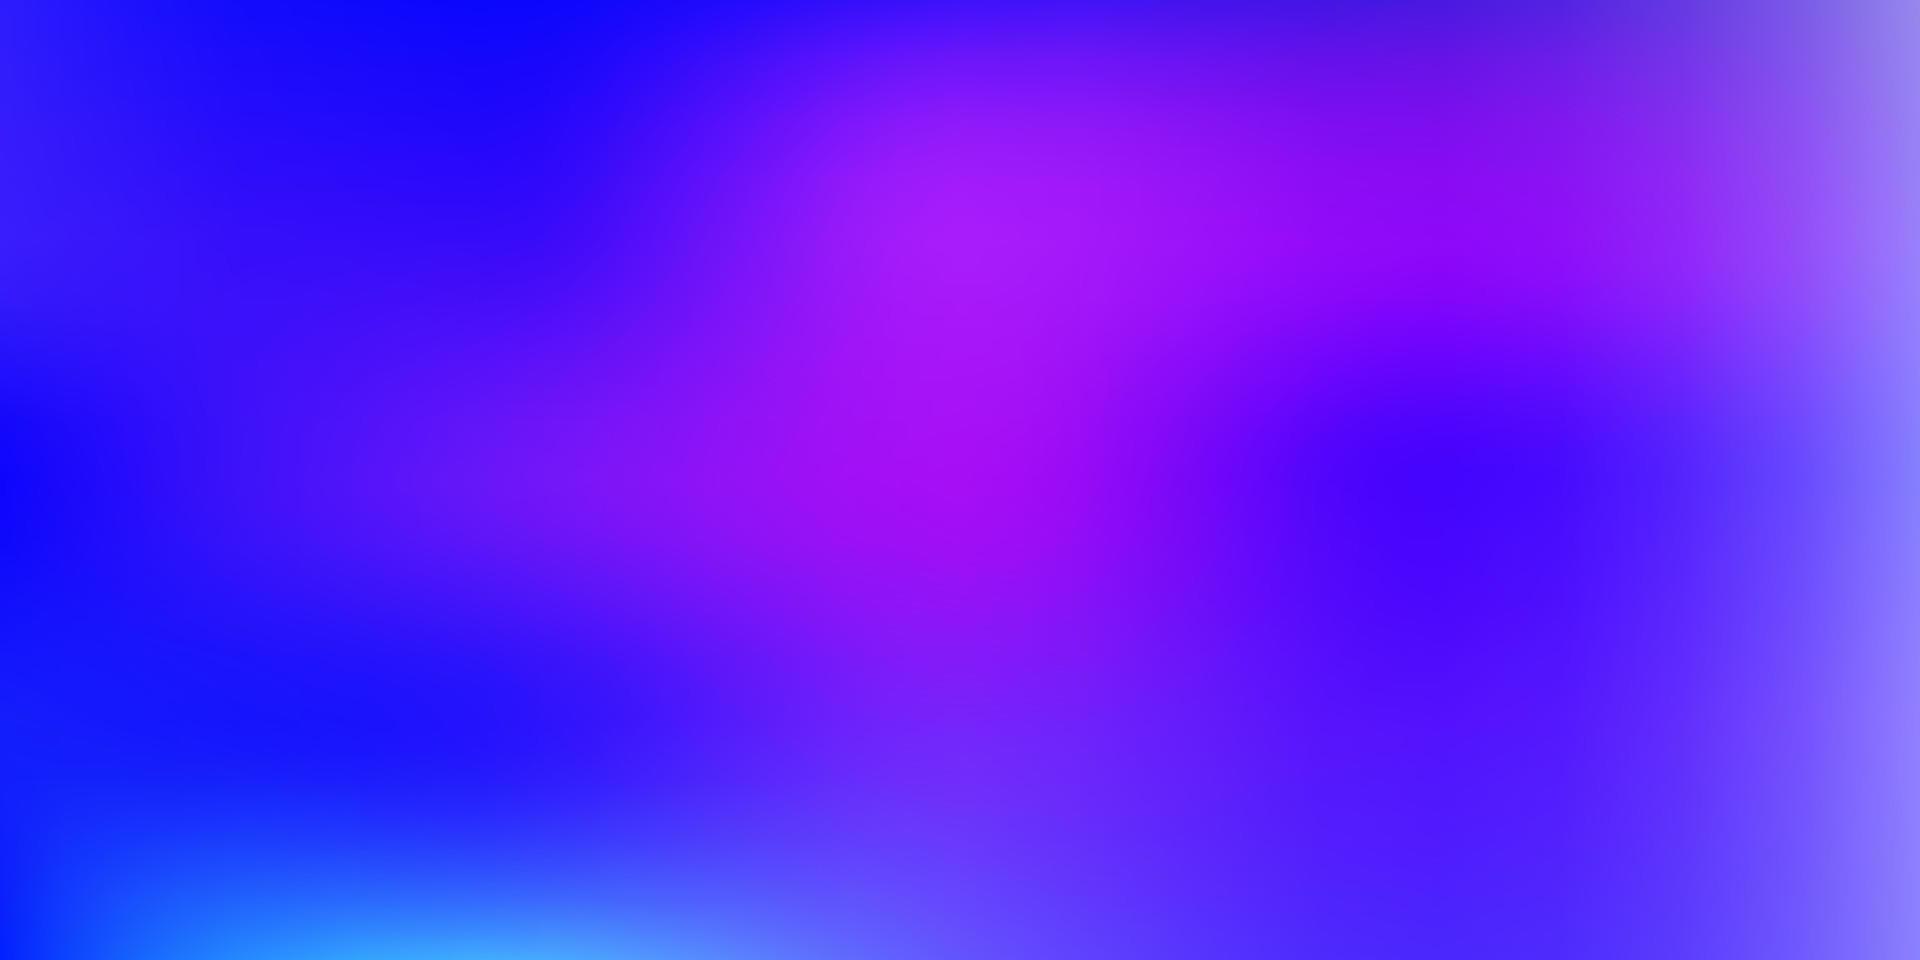 ljusrosa, blå vektor gradient oskärpa ritning.